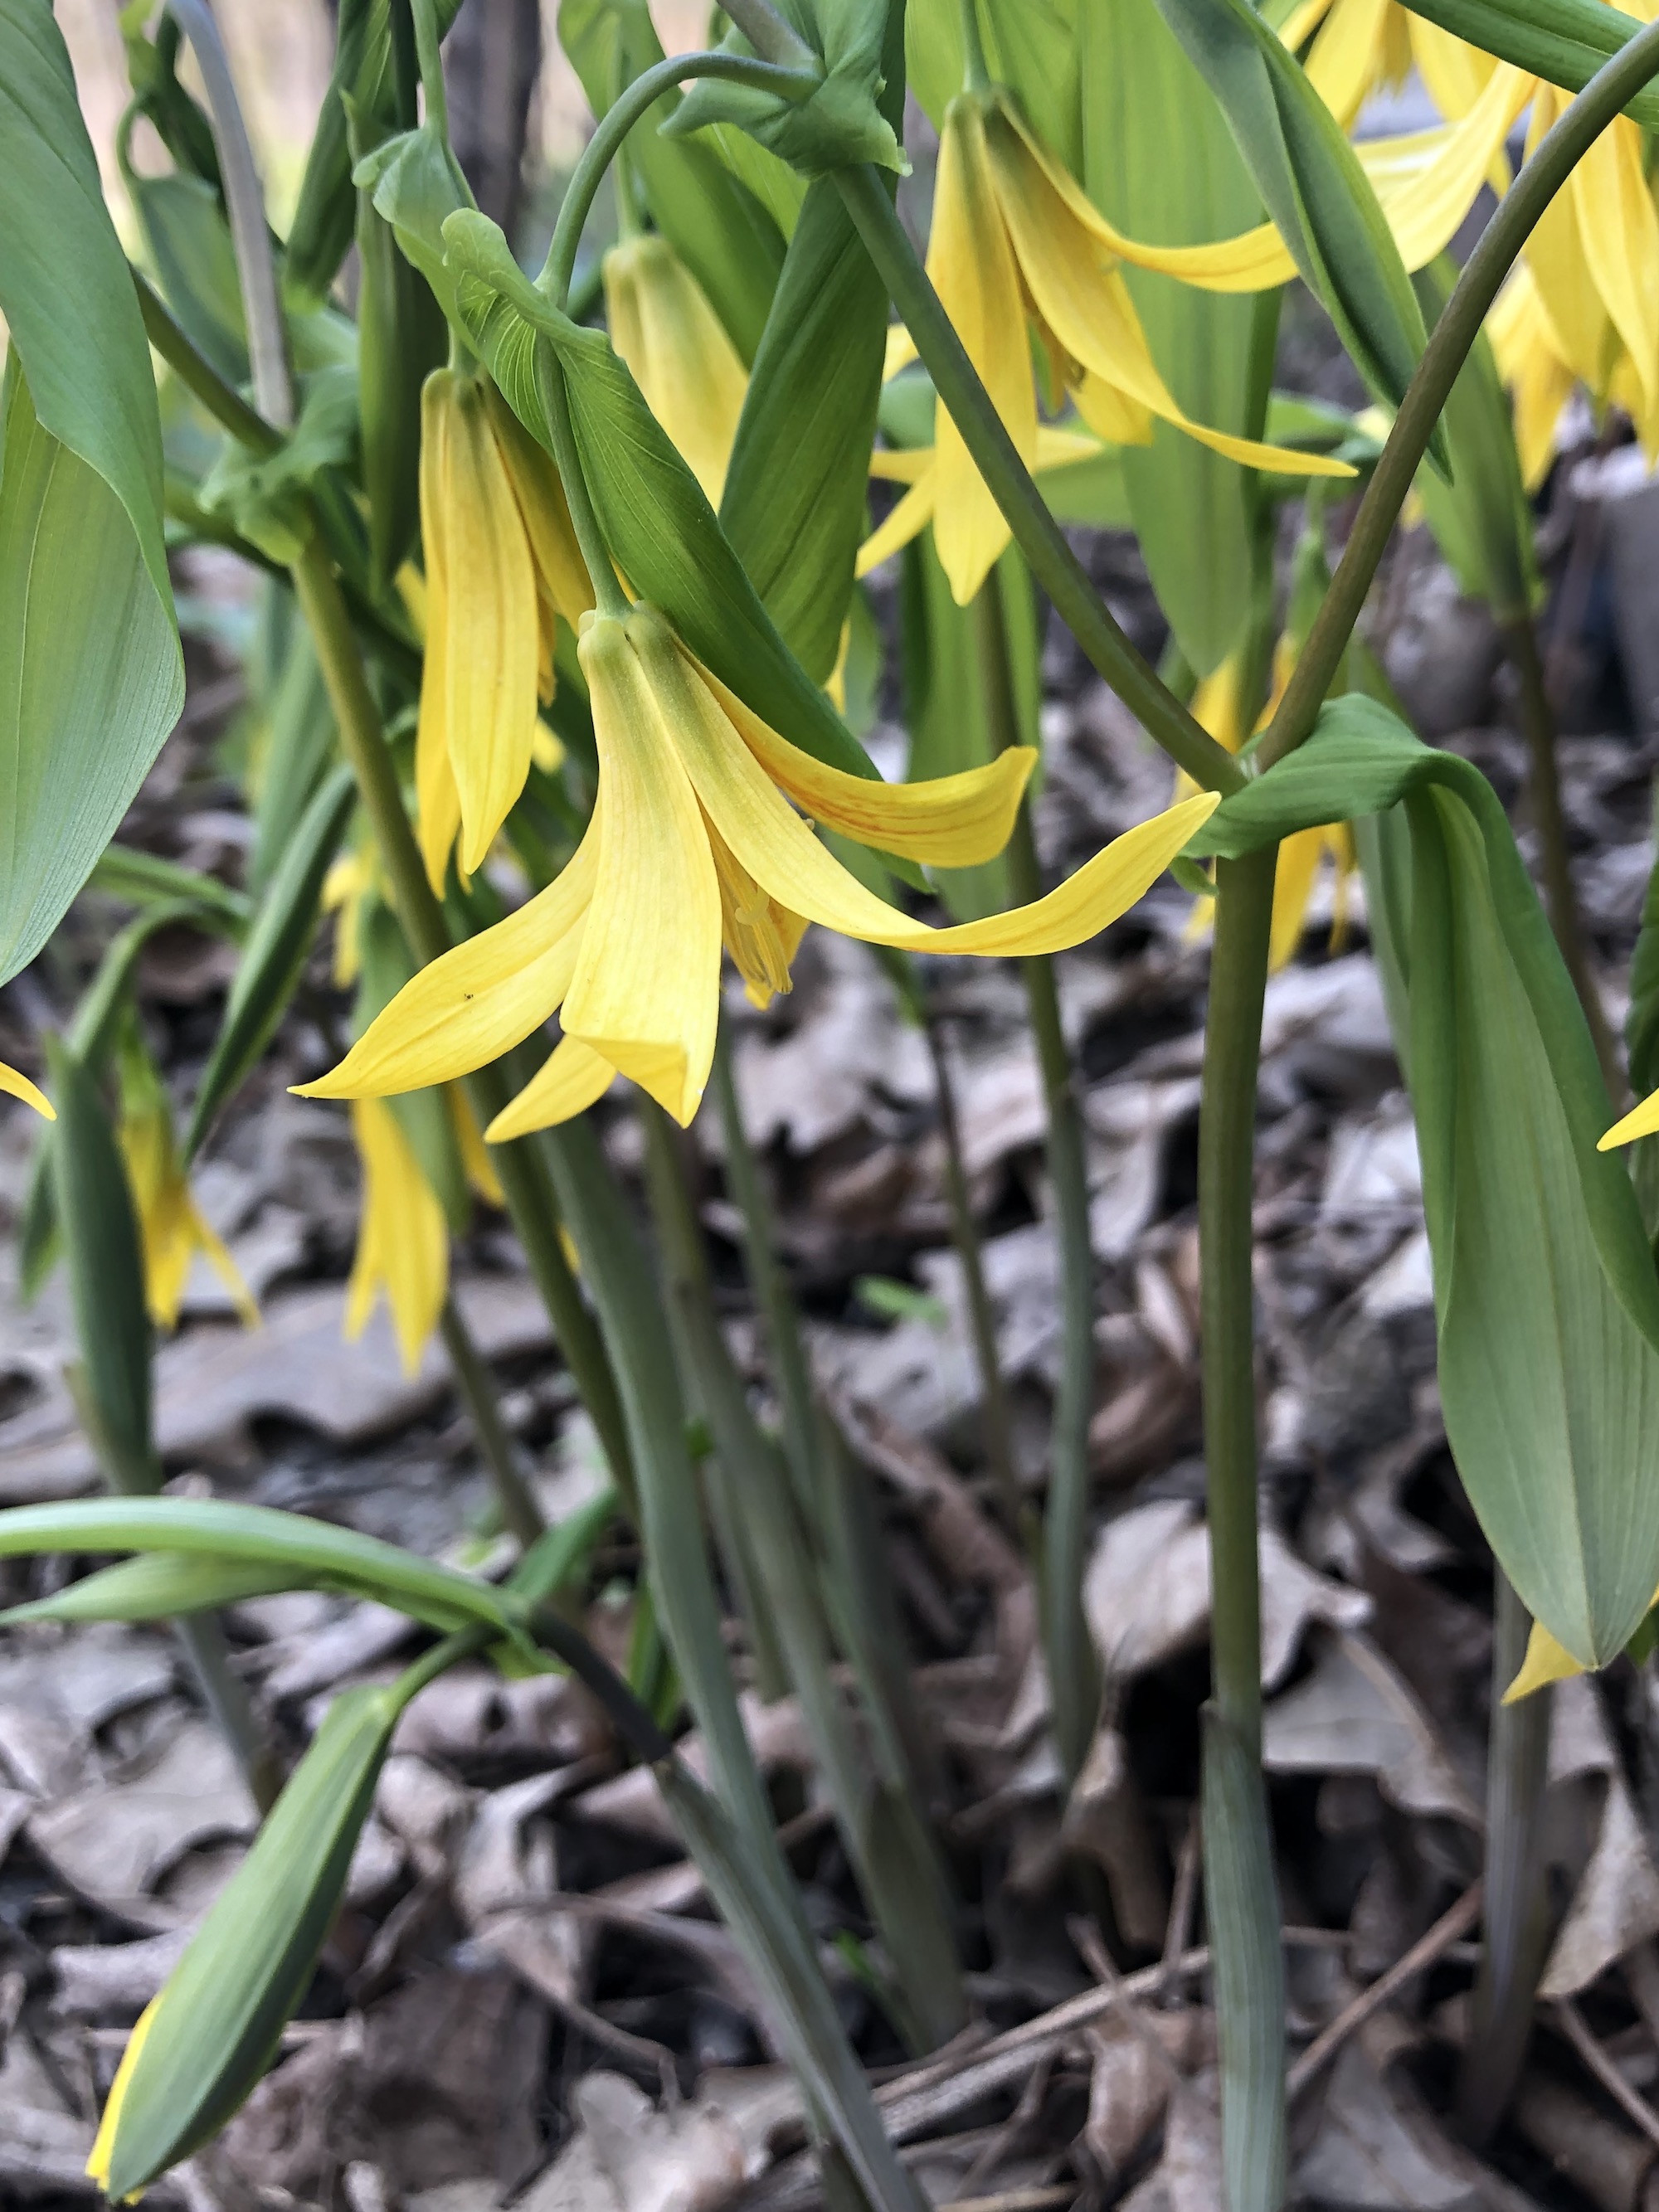 Bellwort in UW Arboretum Native Gardens in Madison, Wisconsin on April 22, 2021.